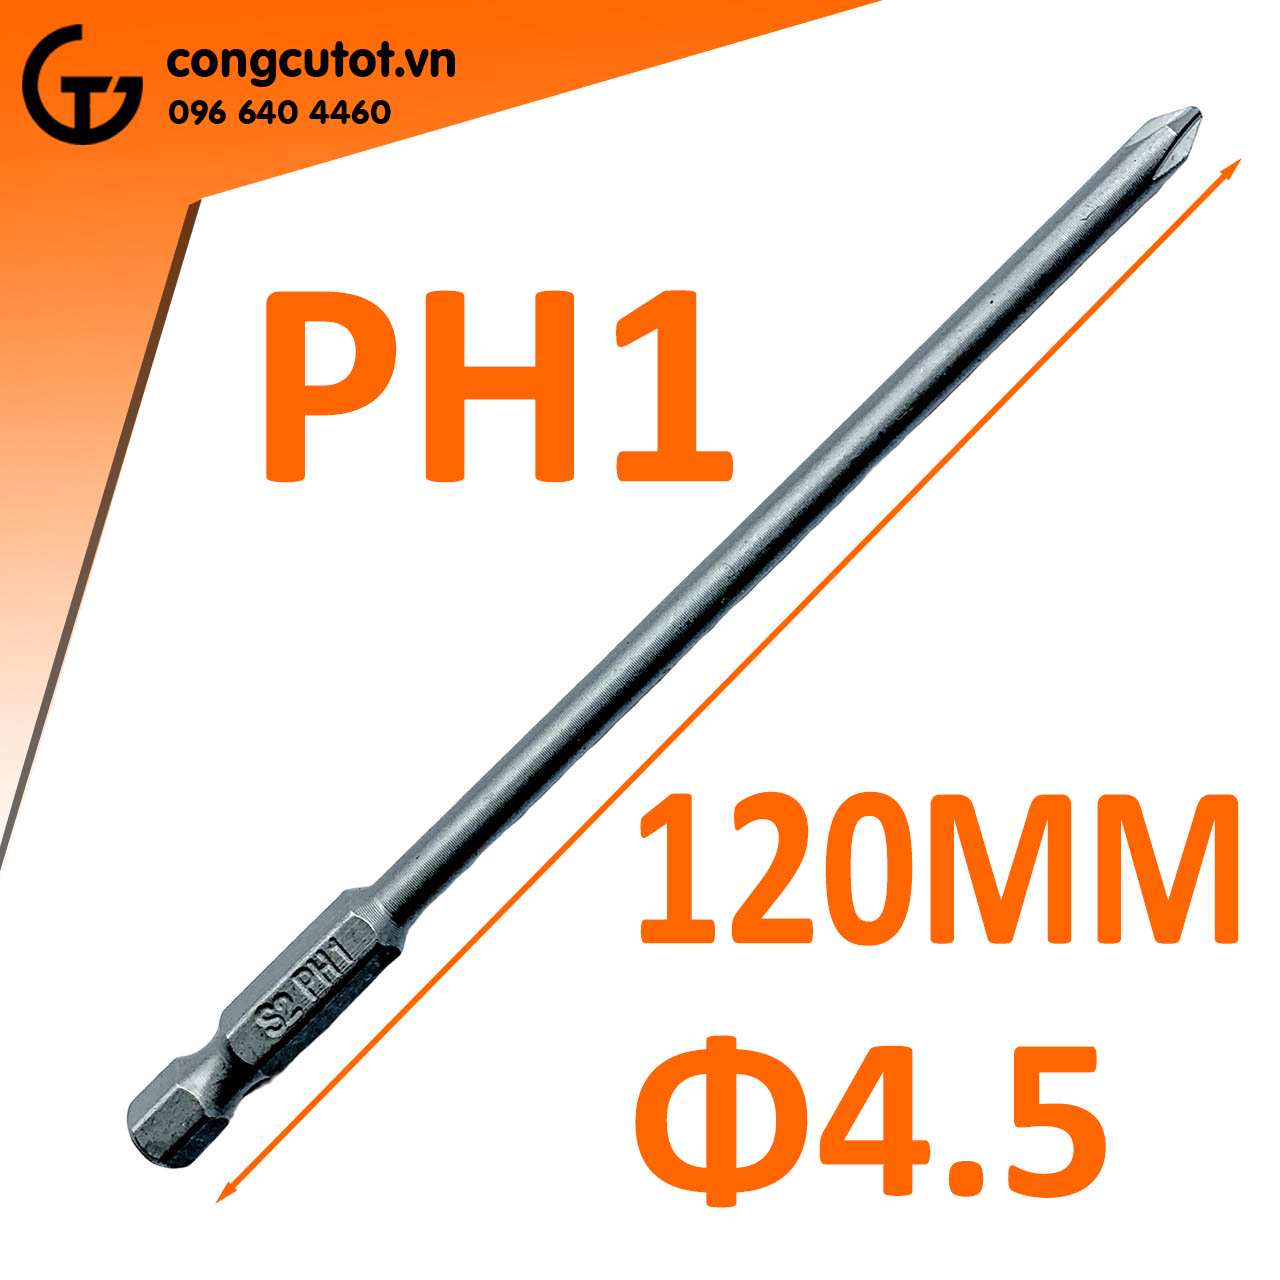 Đầu bắt vít 4 cạnh PH1 Φ4.5 dài 120mm chuôi lục thép S2 là một sản phẩm vô cùng tiện dụng